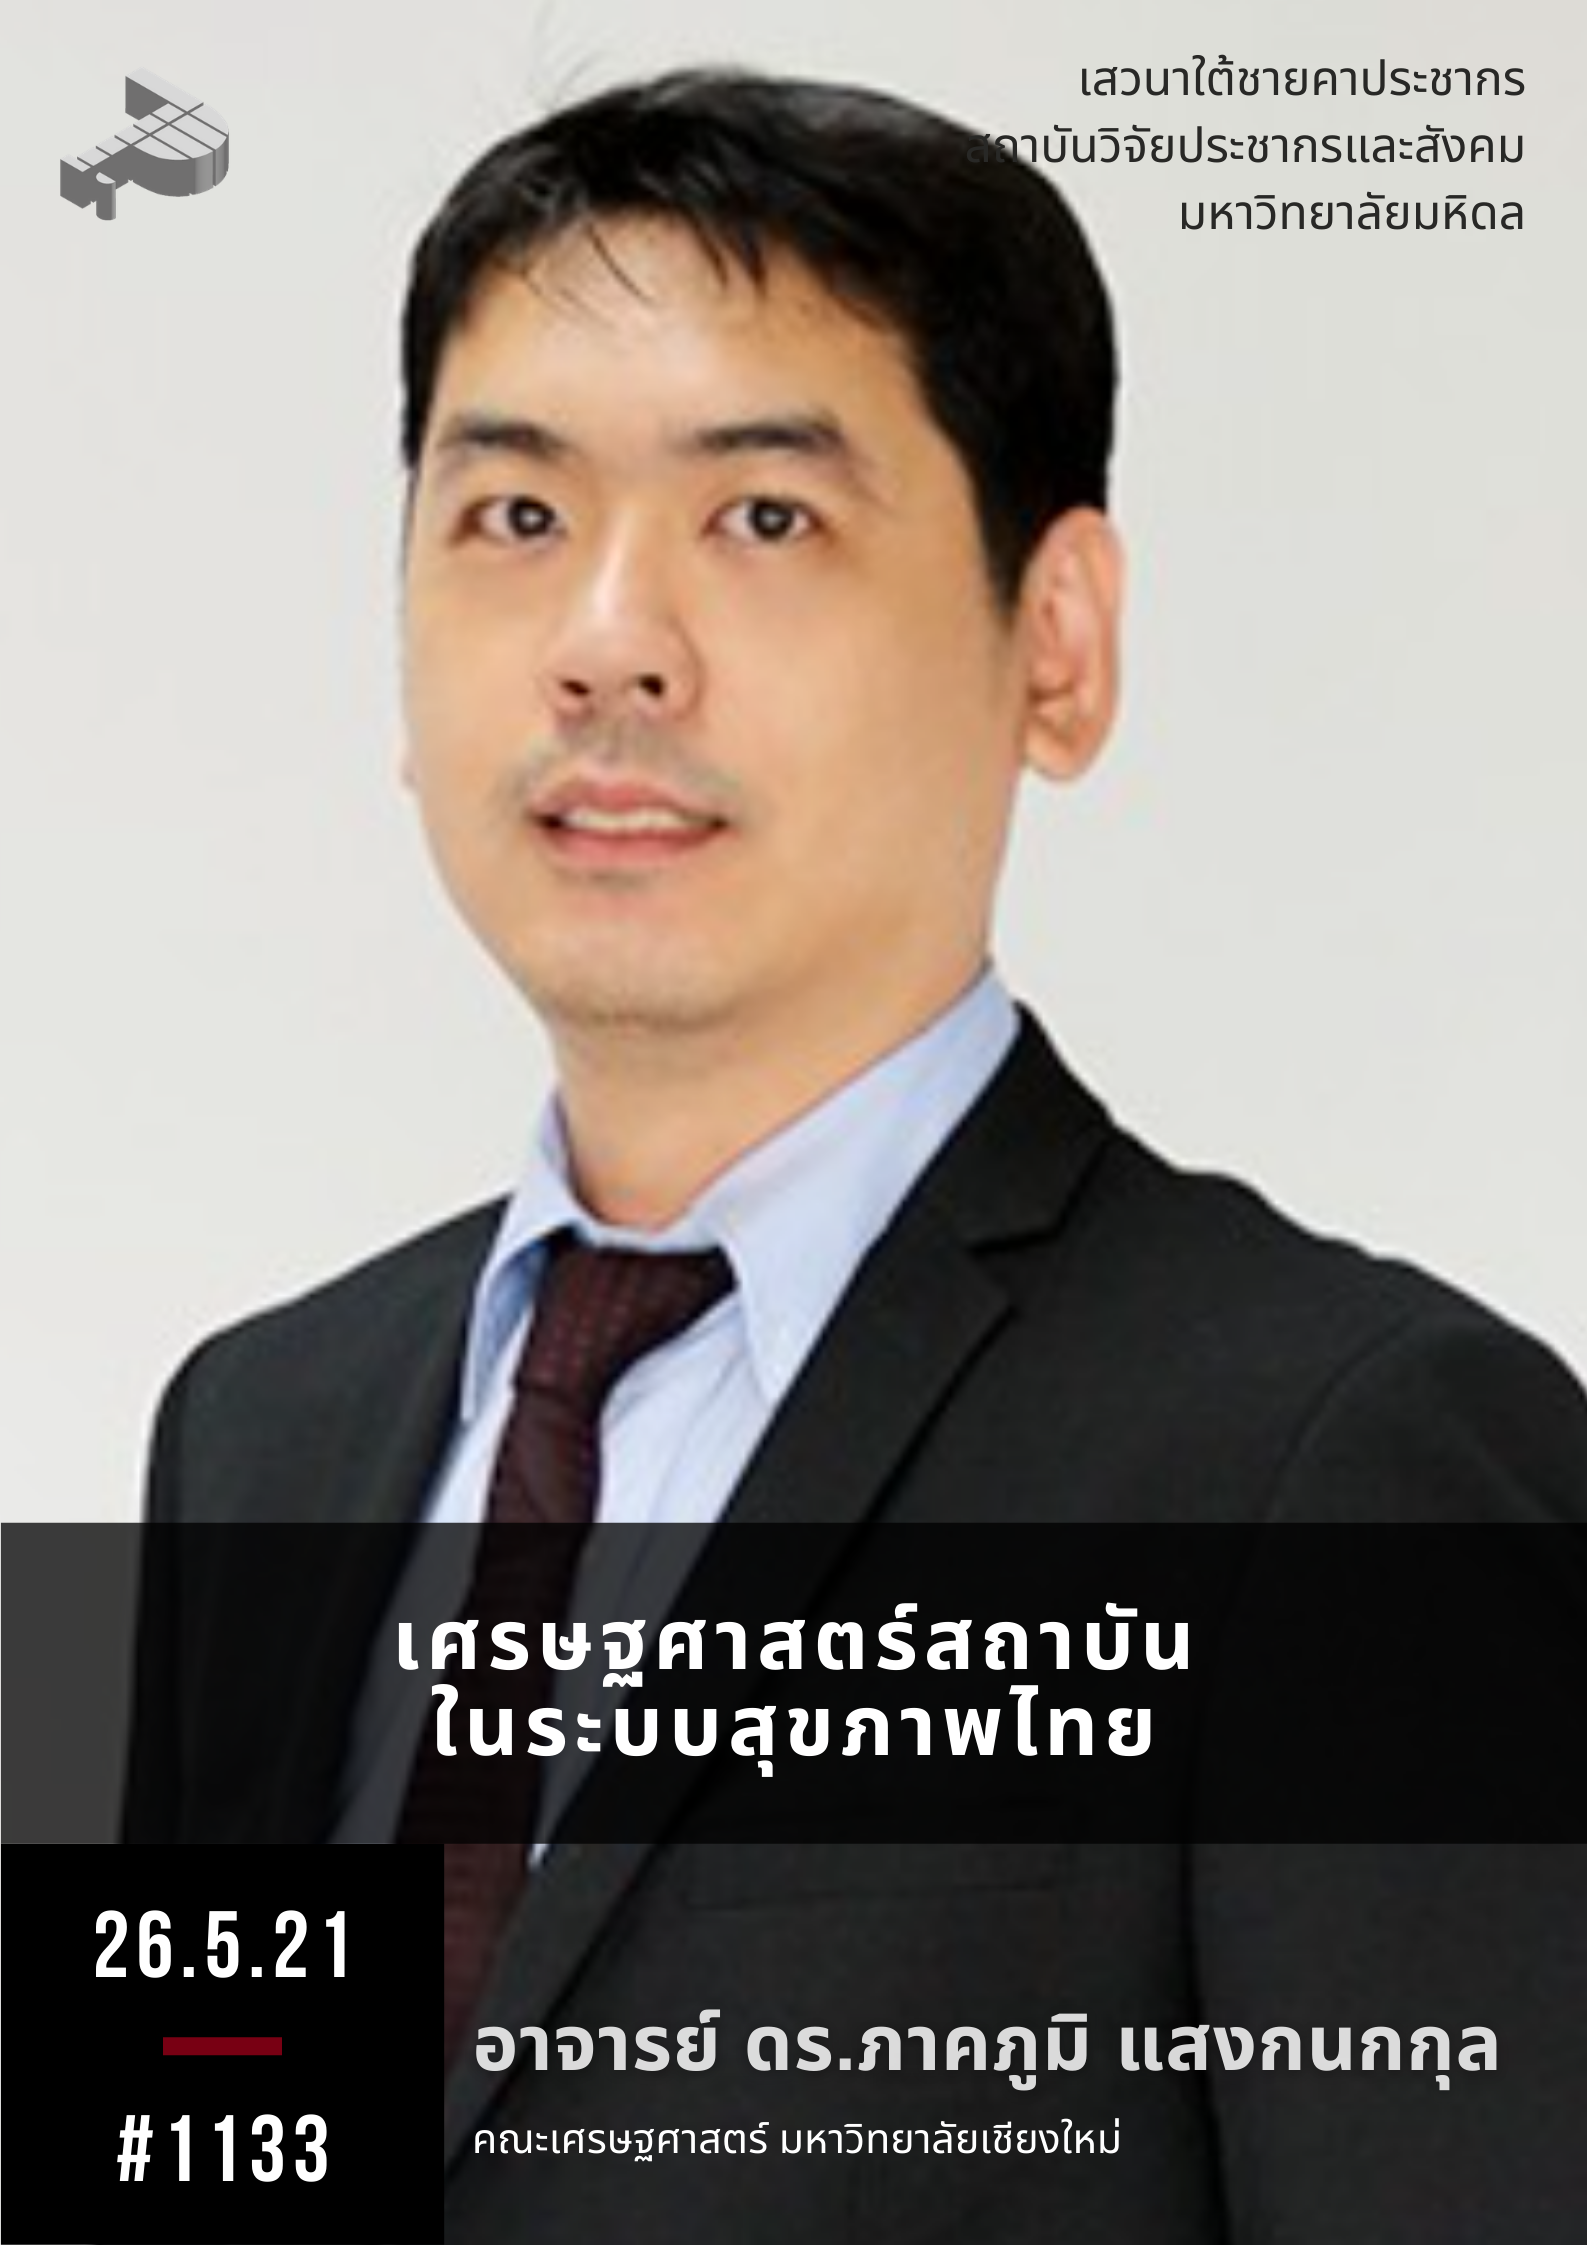 เศรษฐศาสตร์สถาบันในระบบสุขภาพไทย